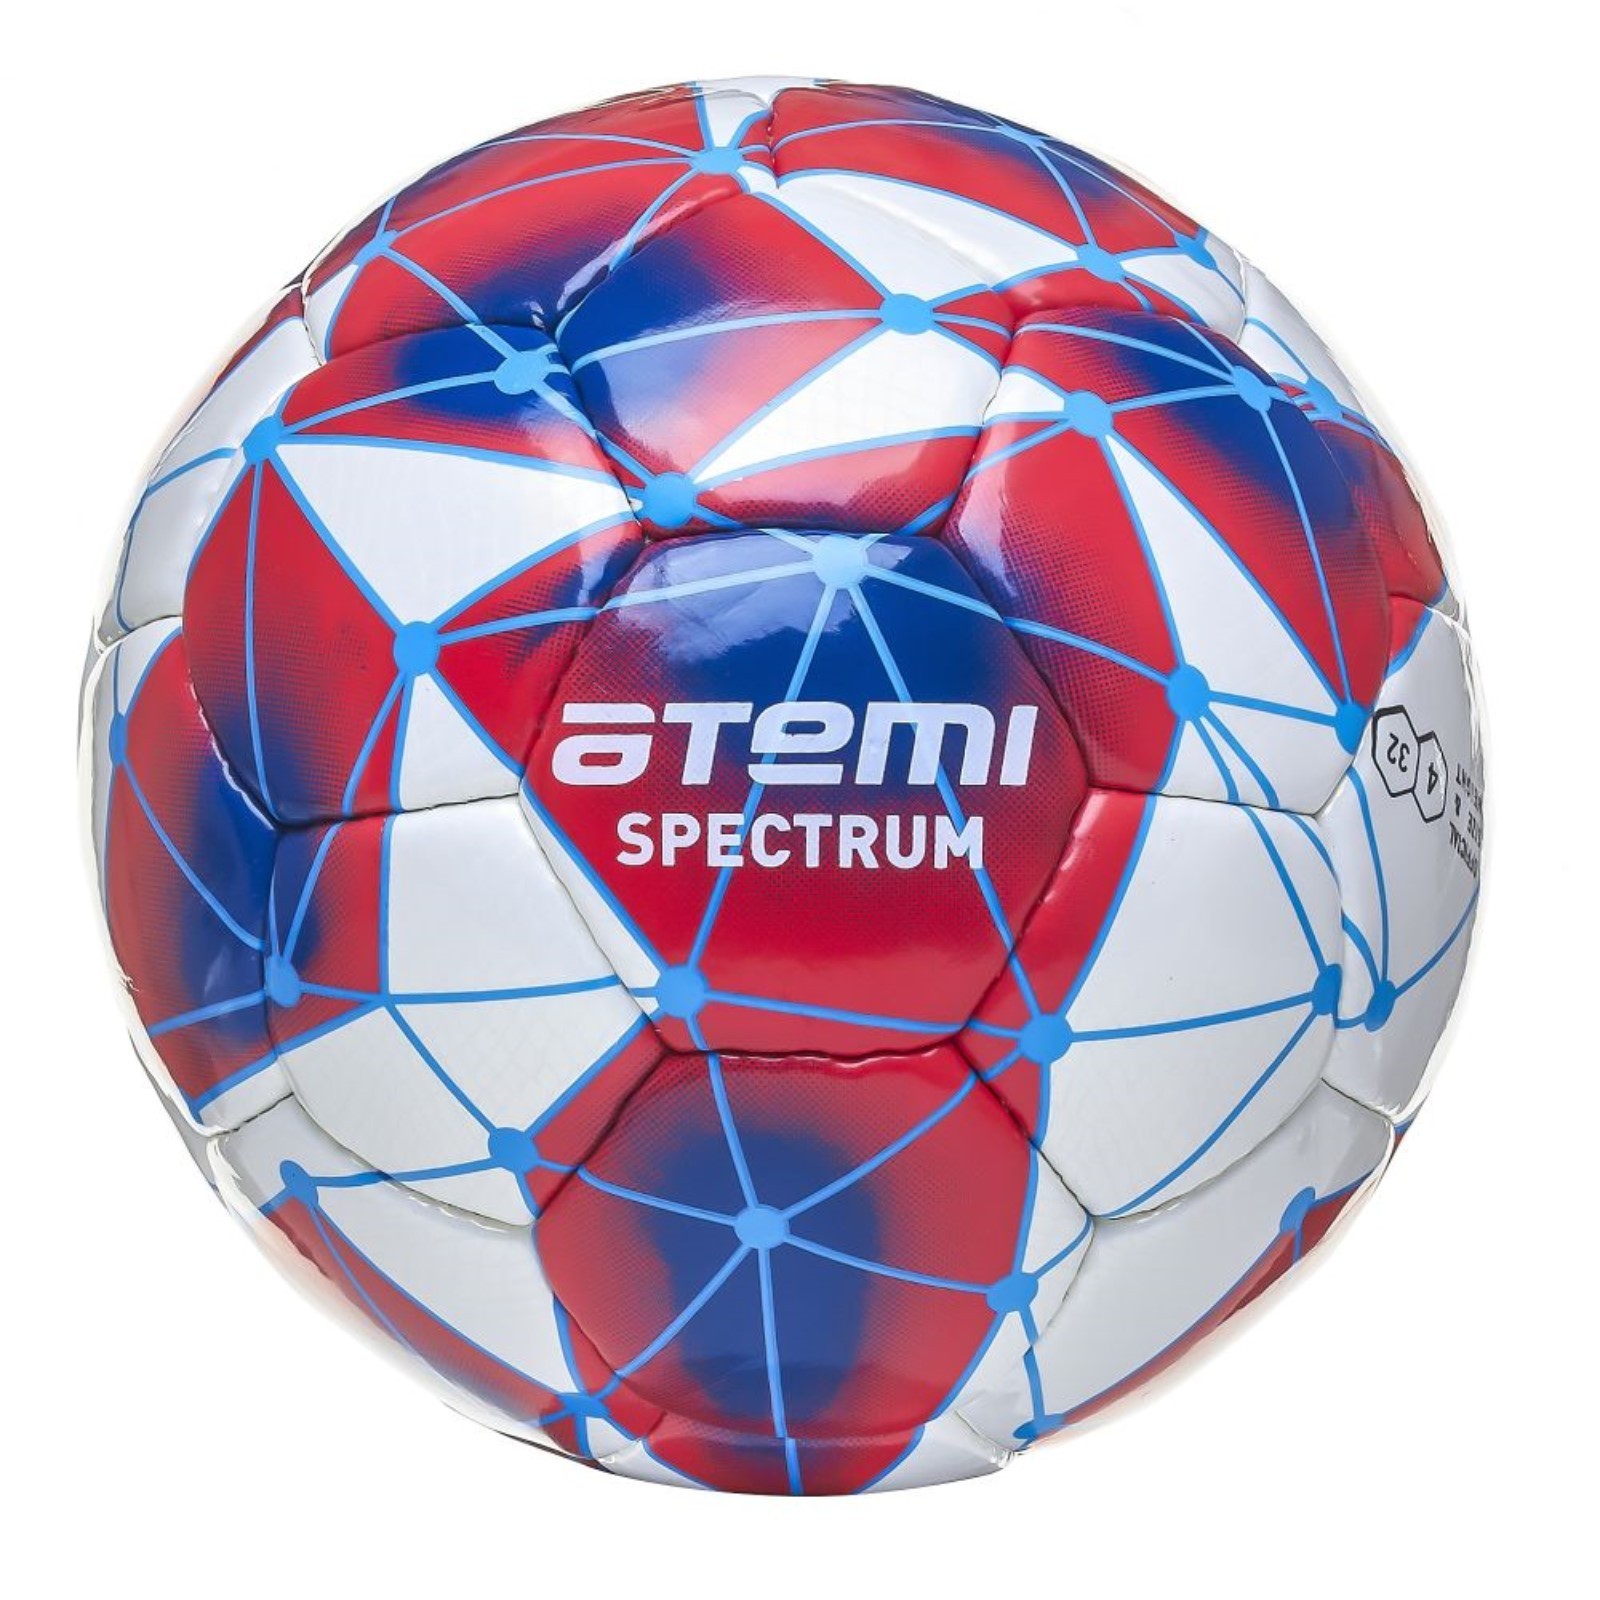 Футбольный мяч Atemi Spectrum размер 4 красный/синий/белый